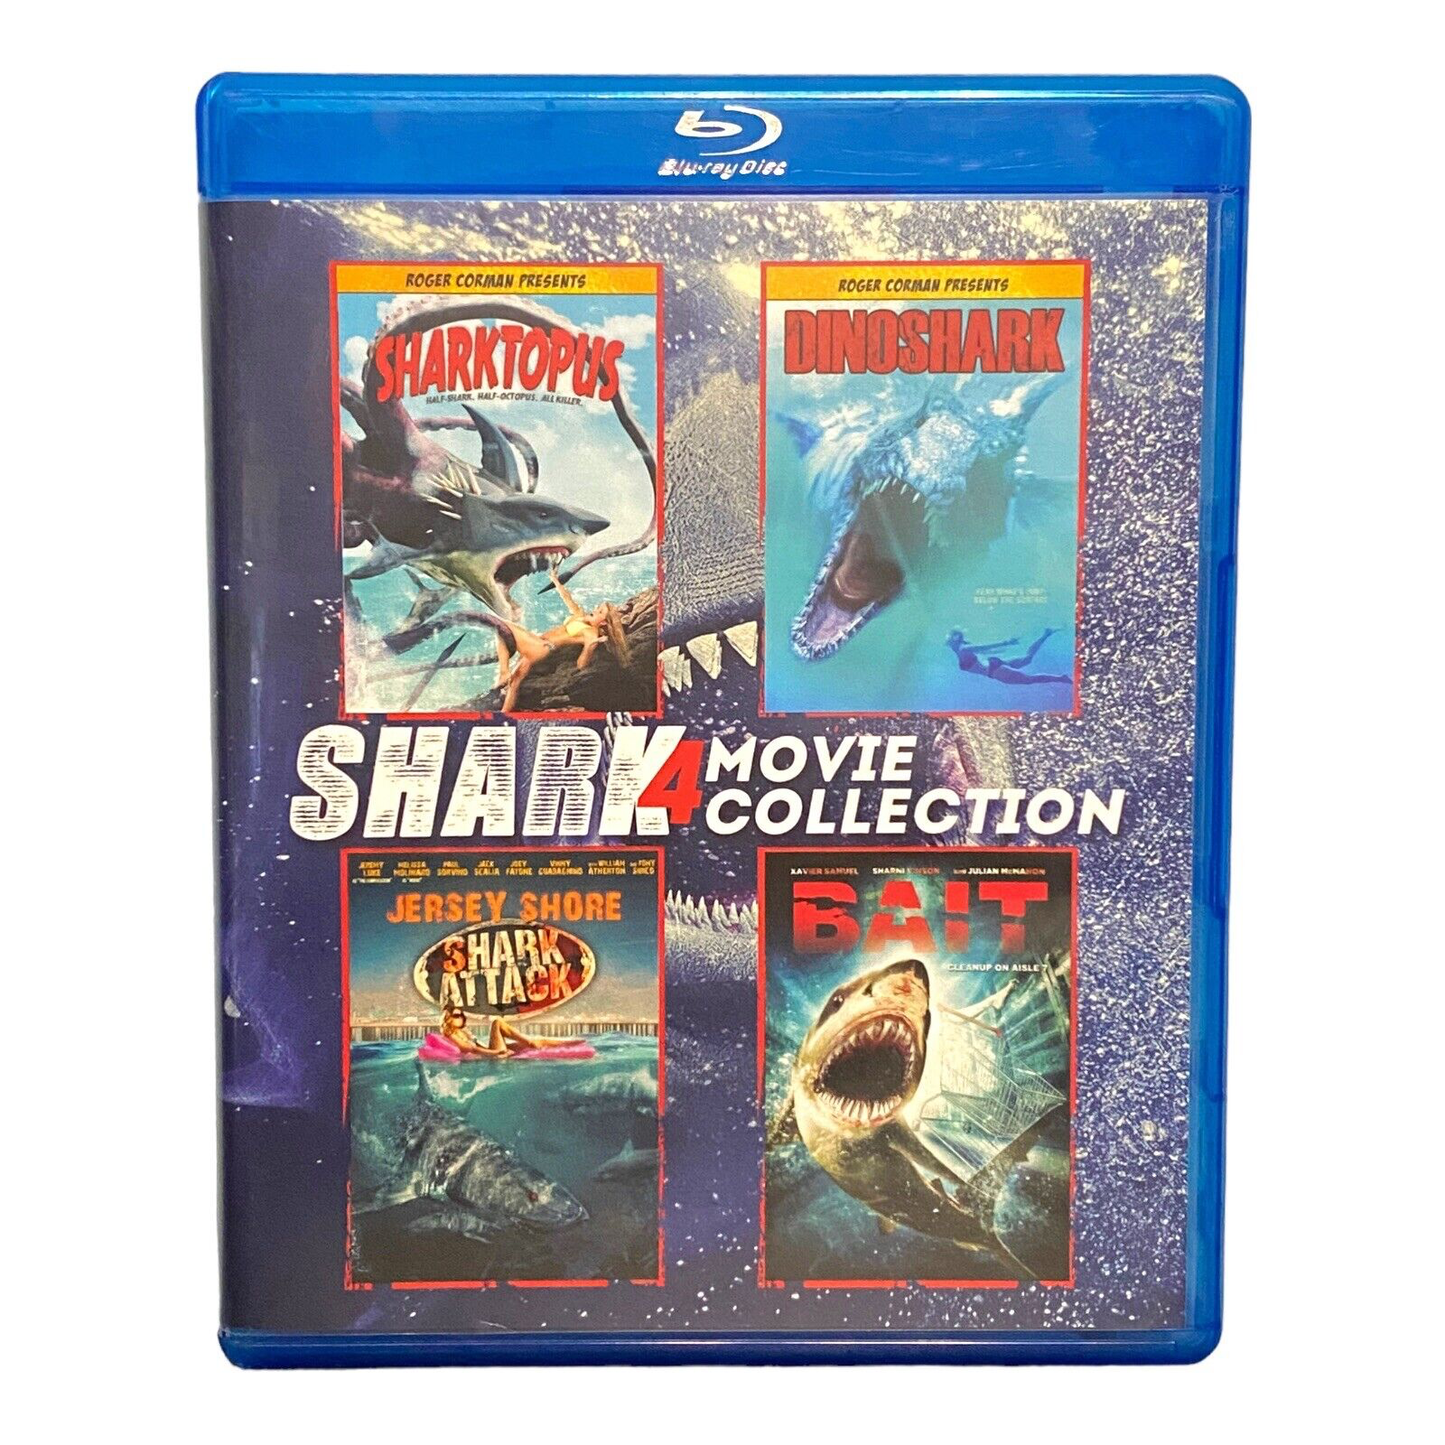 Jersey Shore Shark Attack / Sharktopus (Blu-ray) / Bait (2012/ Blu-ray) / Dinoshark (Blu-ray) - Blu-ray VAR VAR VAR